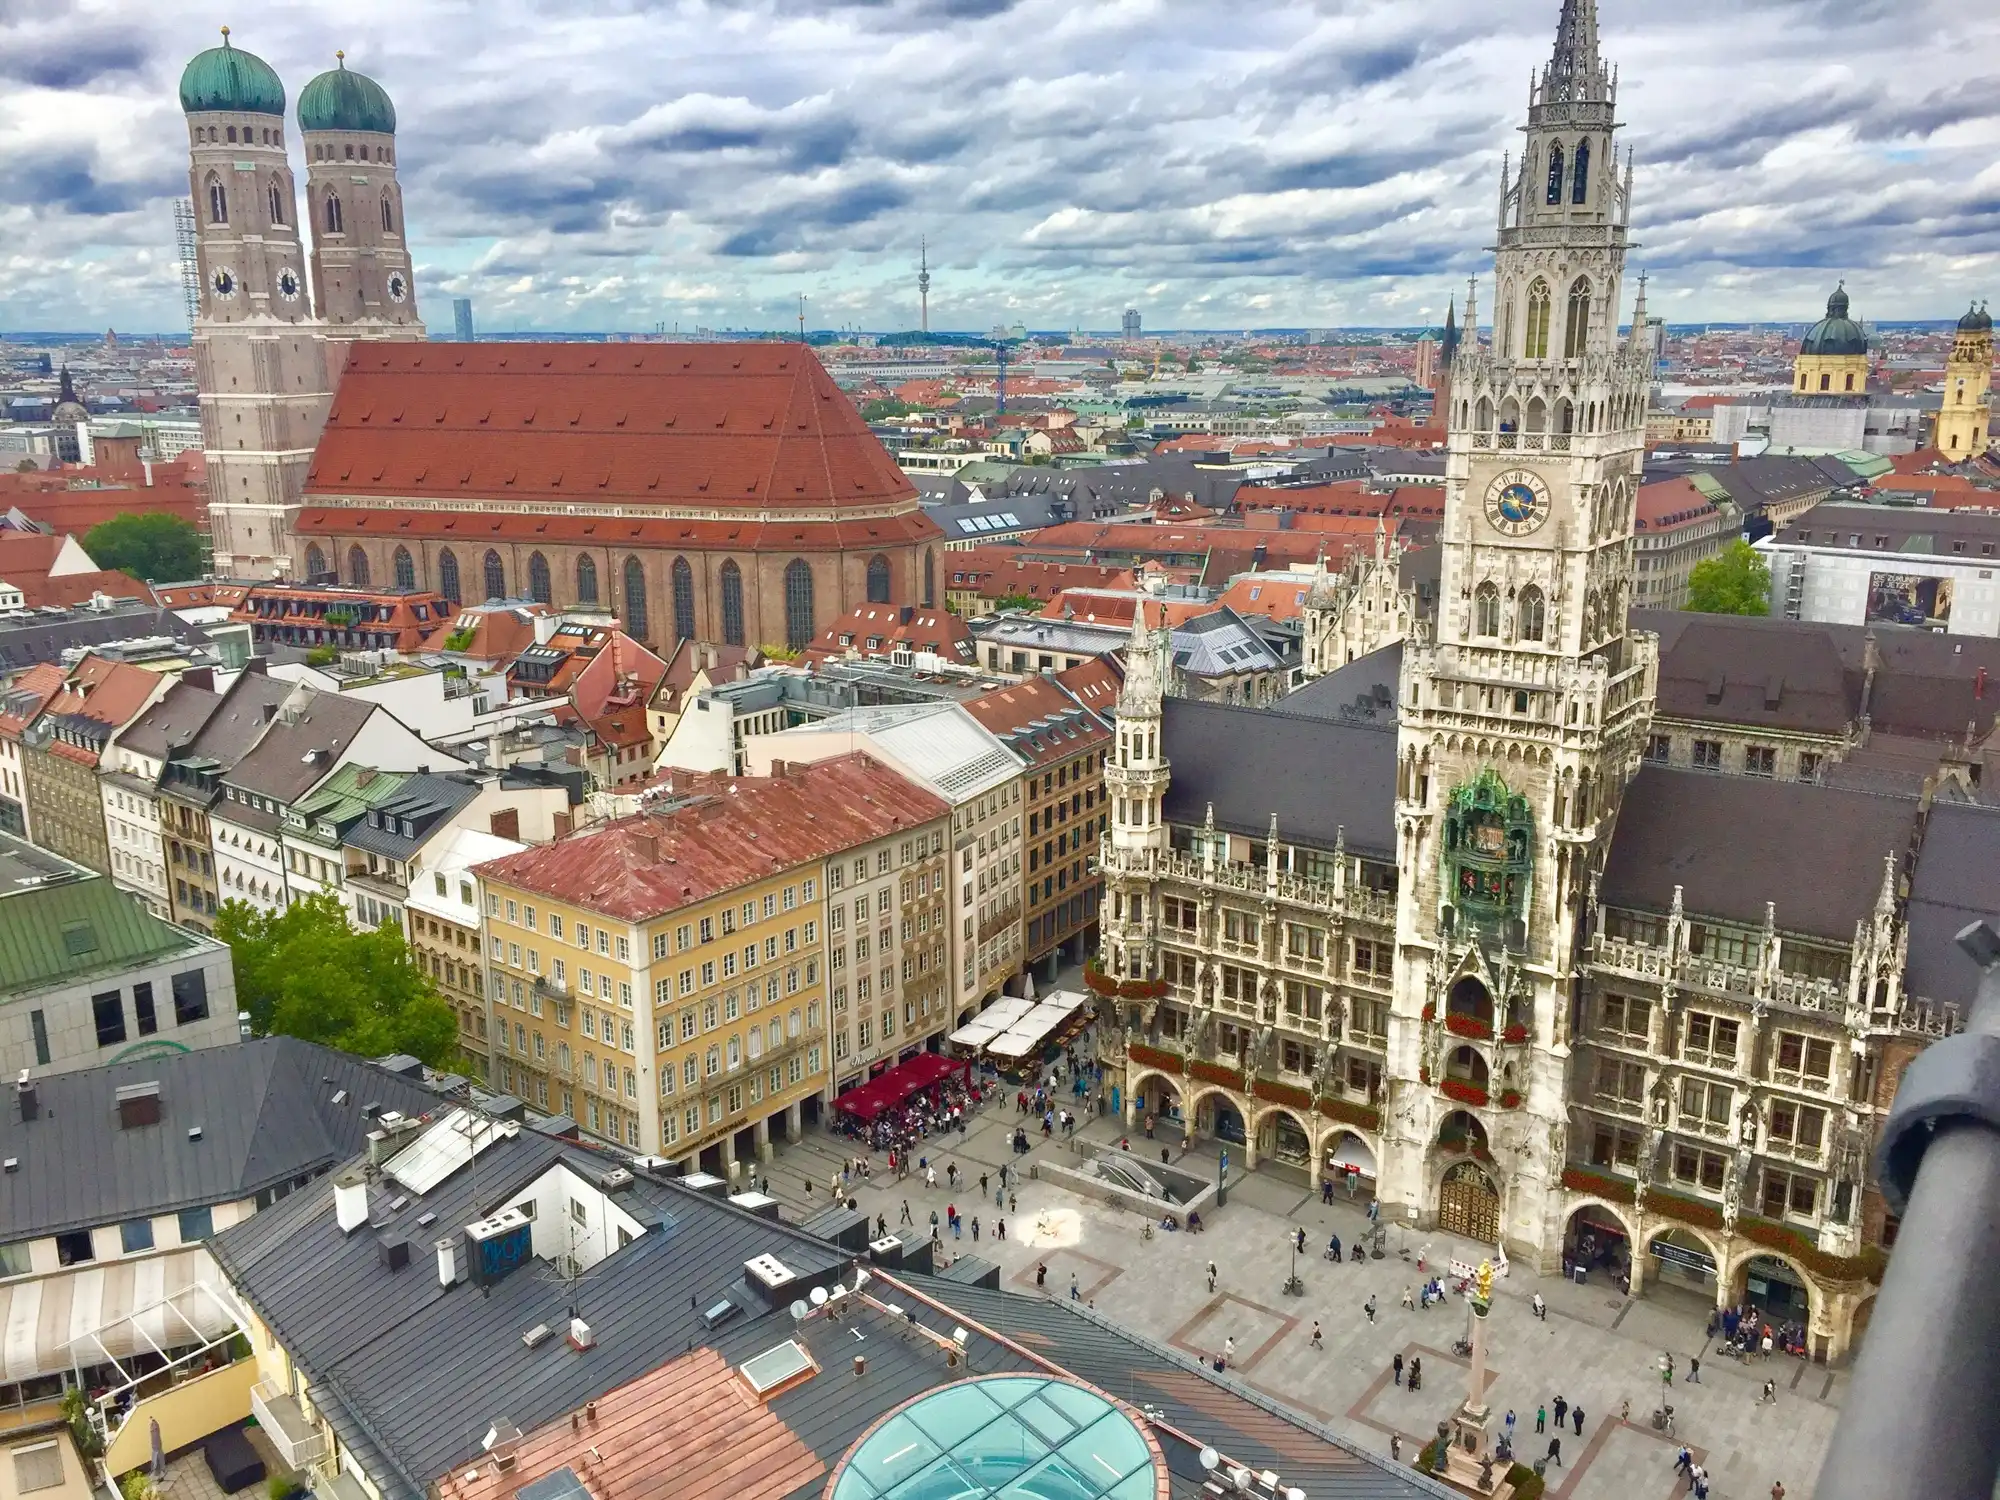 Munich tourism